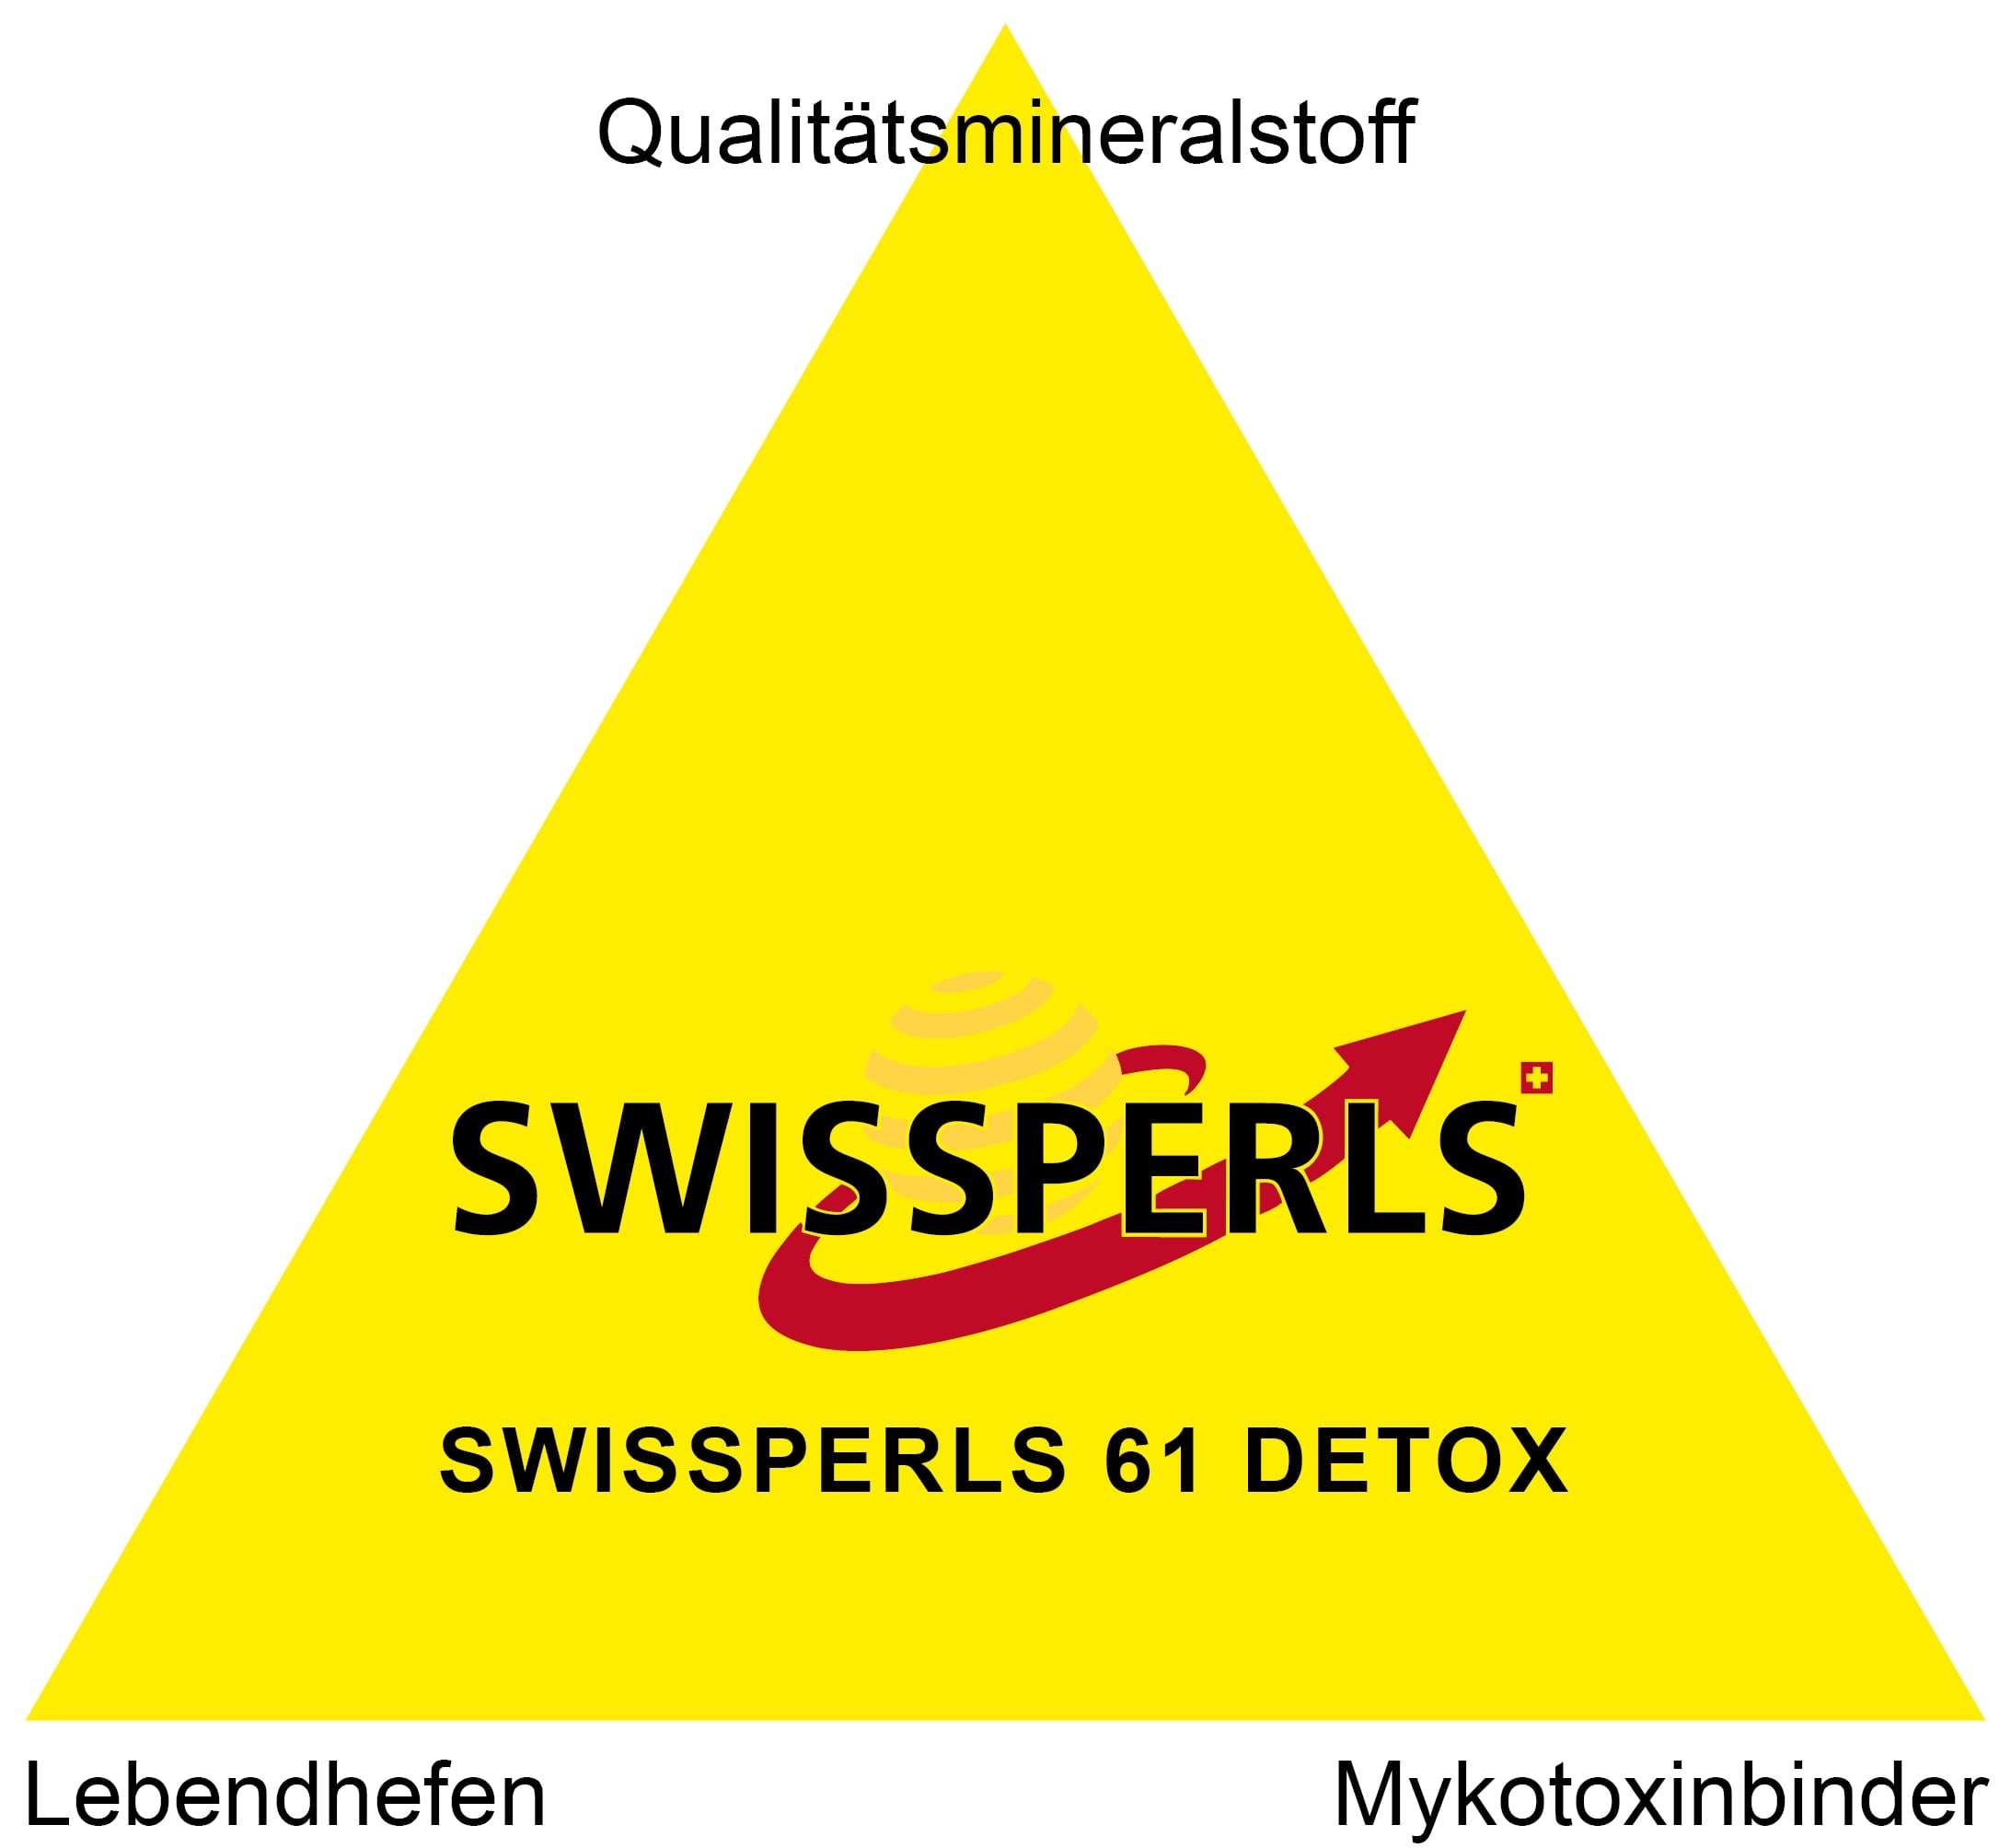 SWISSPERLS 61 DETOX - Qualitätsmineralstoff - Mykotoxinbinder - Lebendhefen.